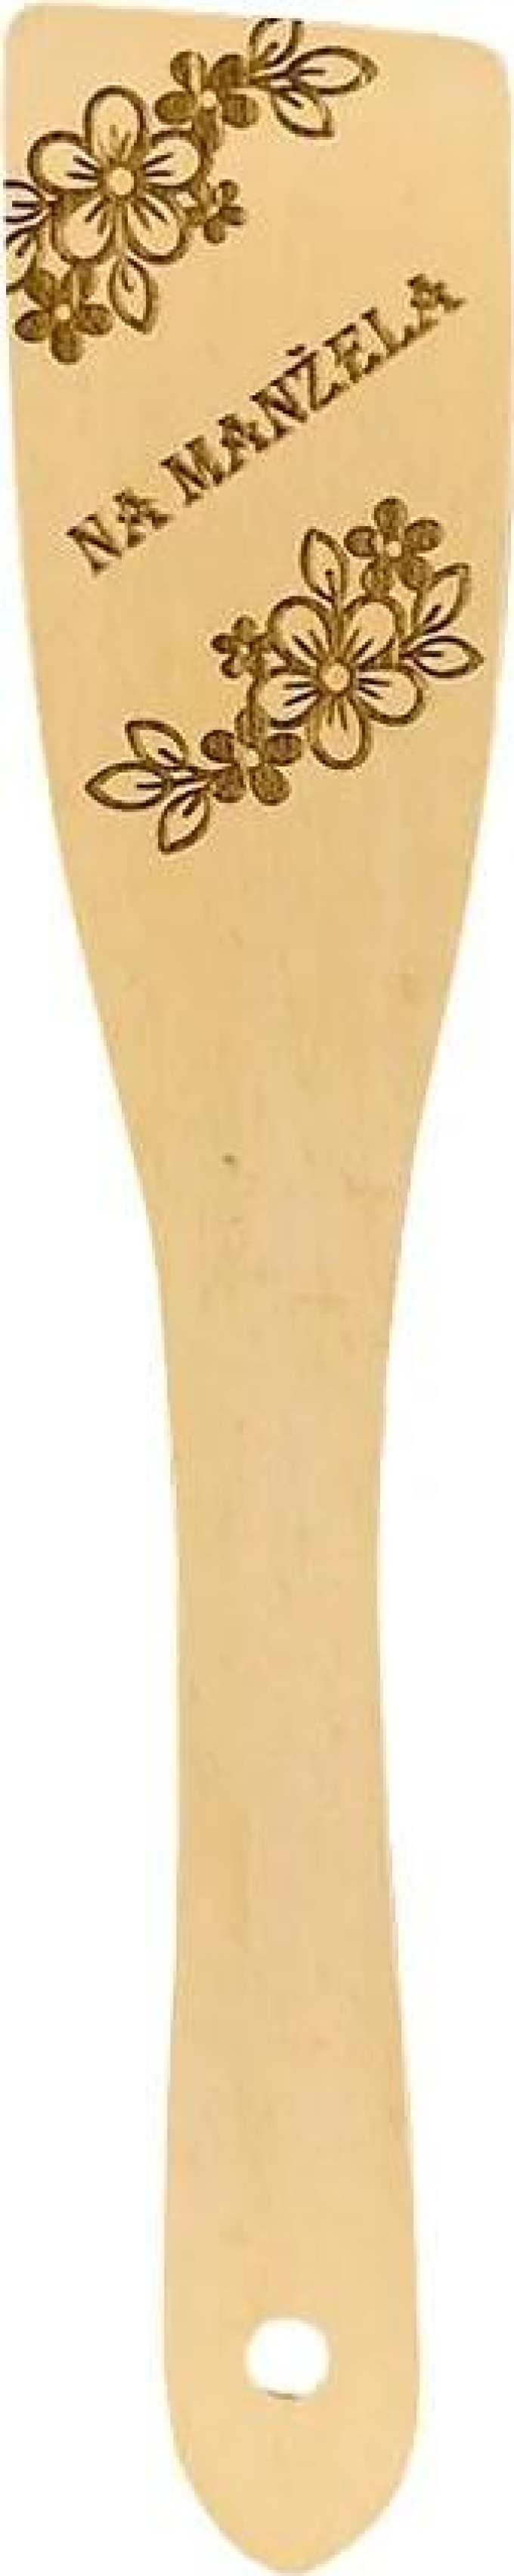 AMADEA Dřevěná obracečka buk text "na manžela", masivní dřevo, délka 30 cm, český výrobek